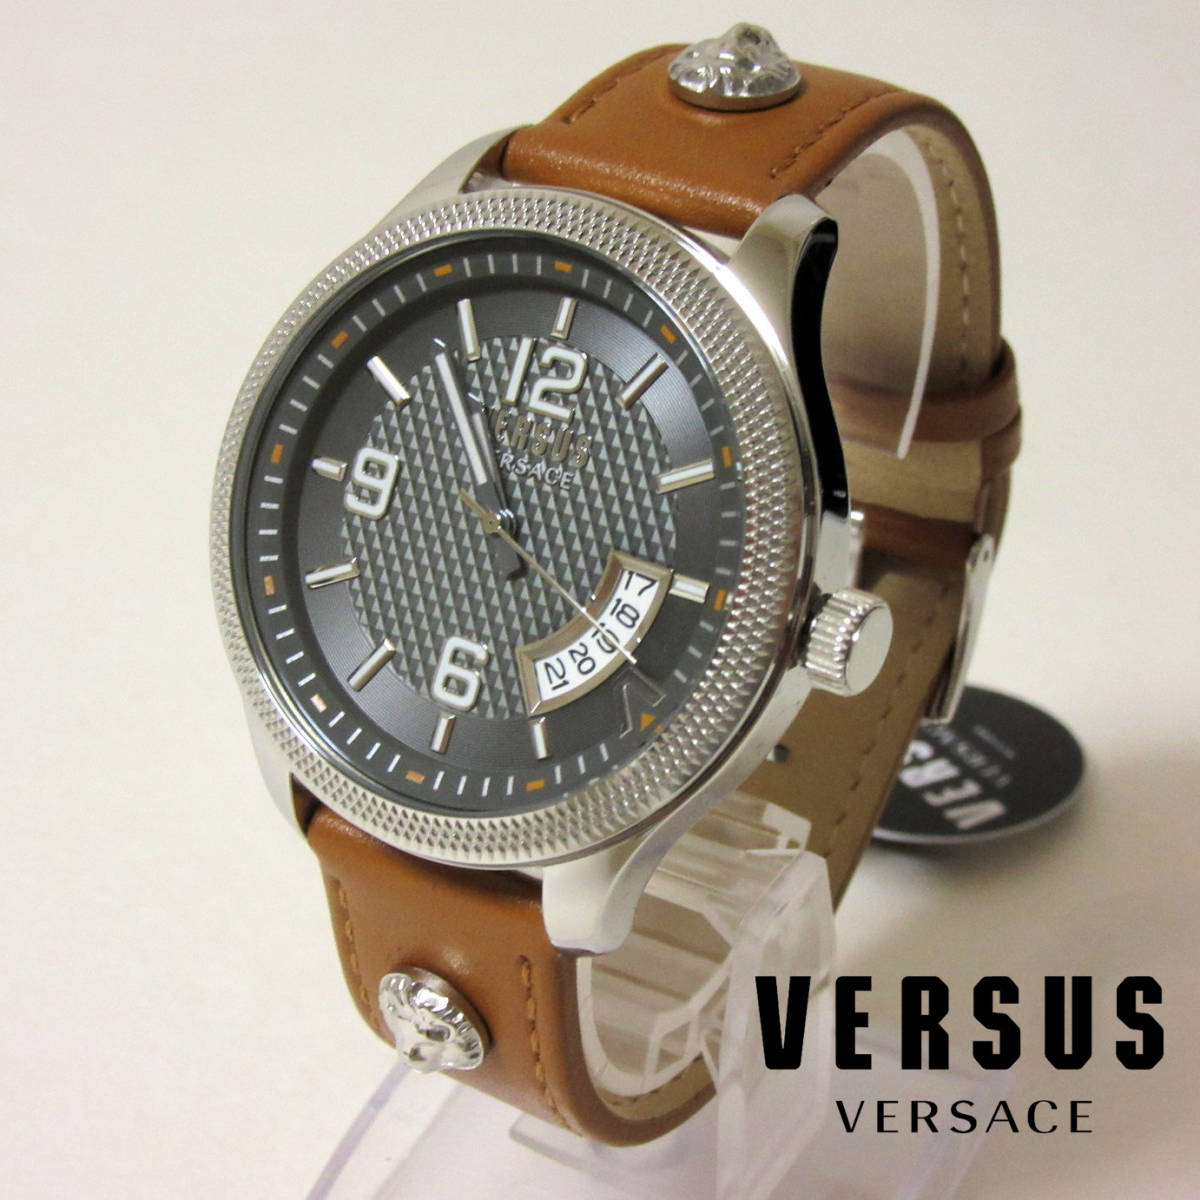 박스 내 새 제품 VERSUS VERSACE 3핸드 데이트 길로쉐 남성용 시계 핸드메이드 가죽 벨트 브라운 44mm, 브랜드 시계, 라인, 베르사체